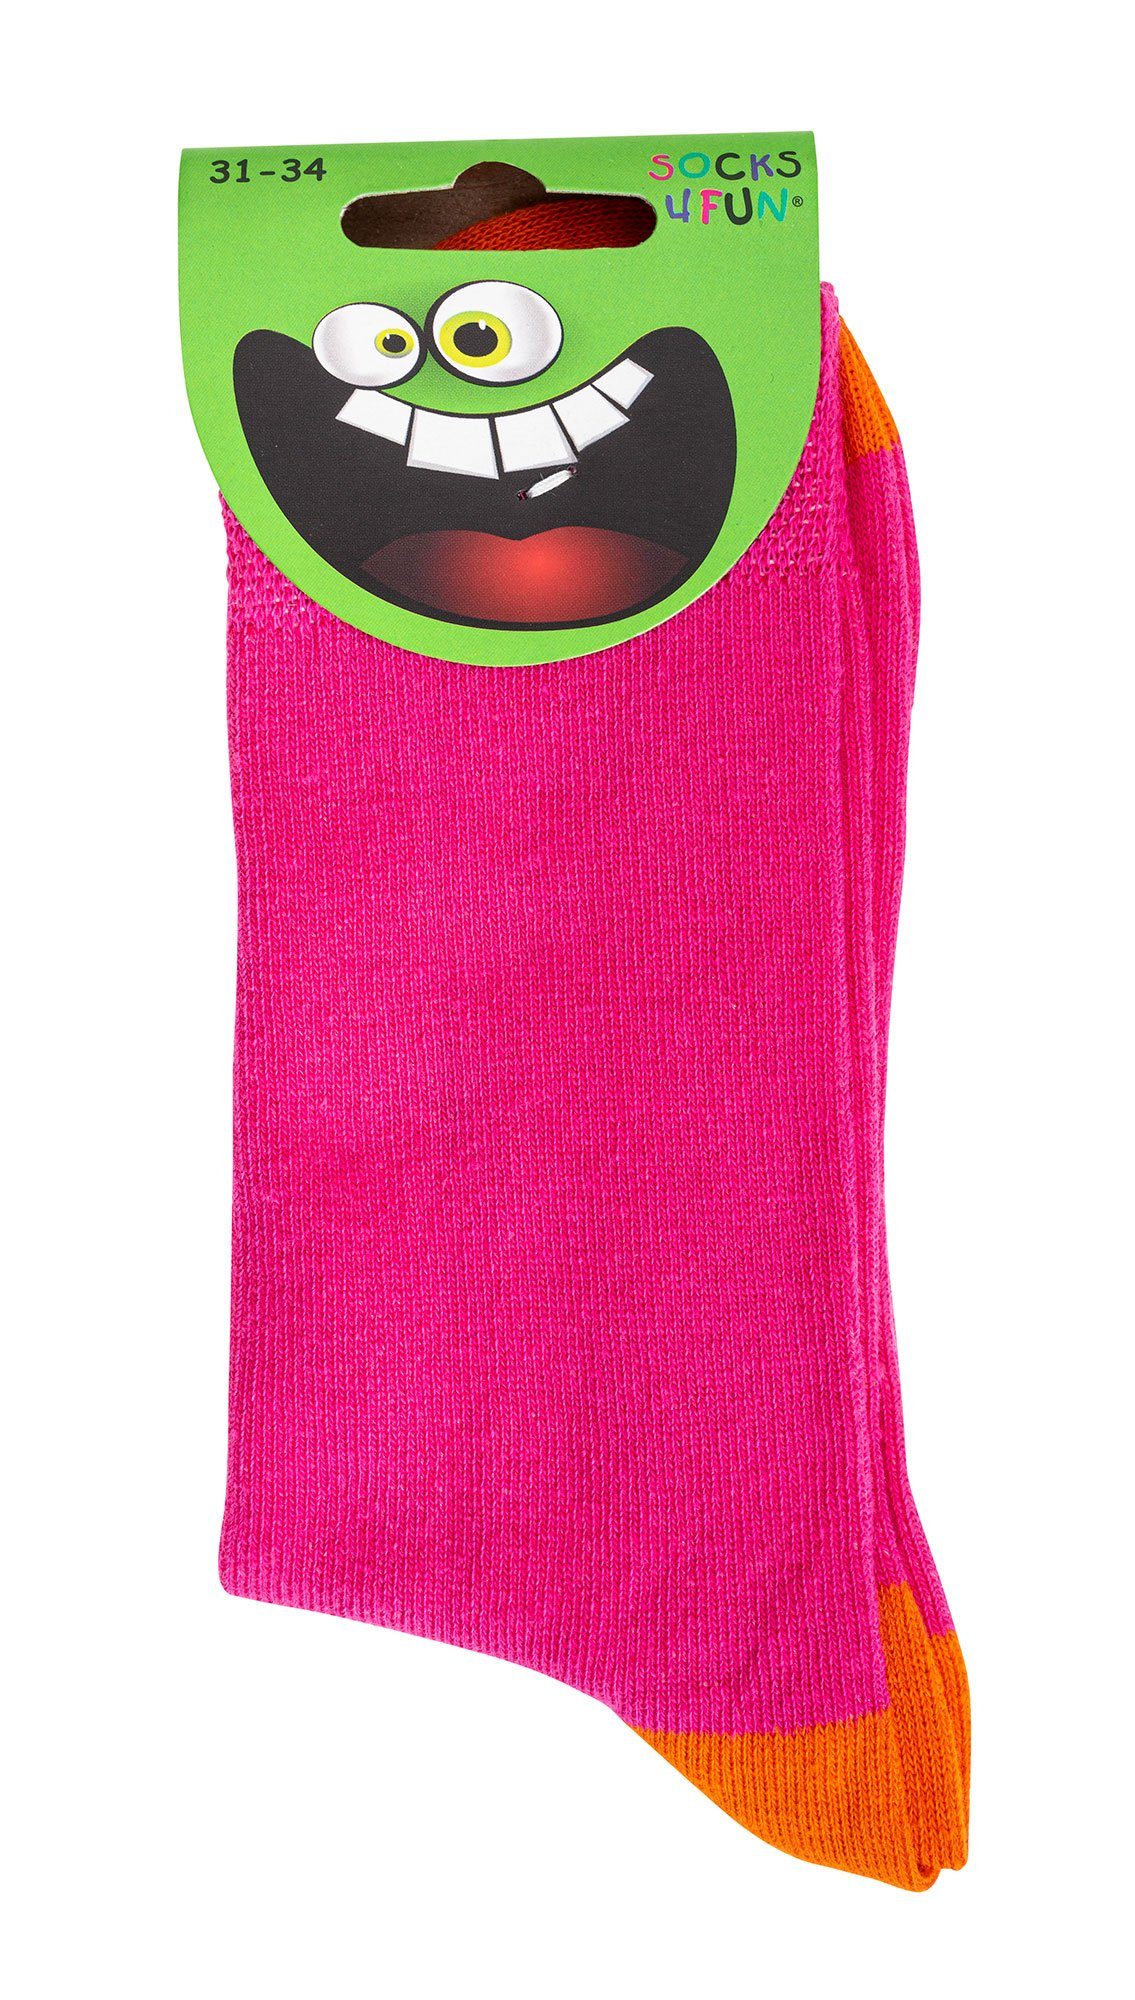 Paar Jungen, LAUNE FARBEN Socken Pink GUTE Mädchen für Kinder Socken FussFreunde 6 &